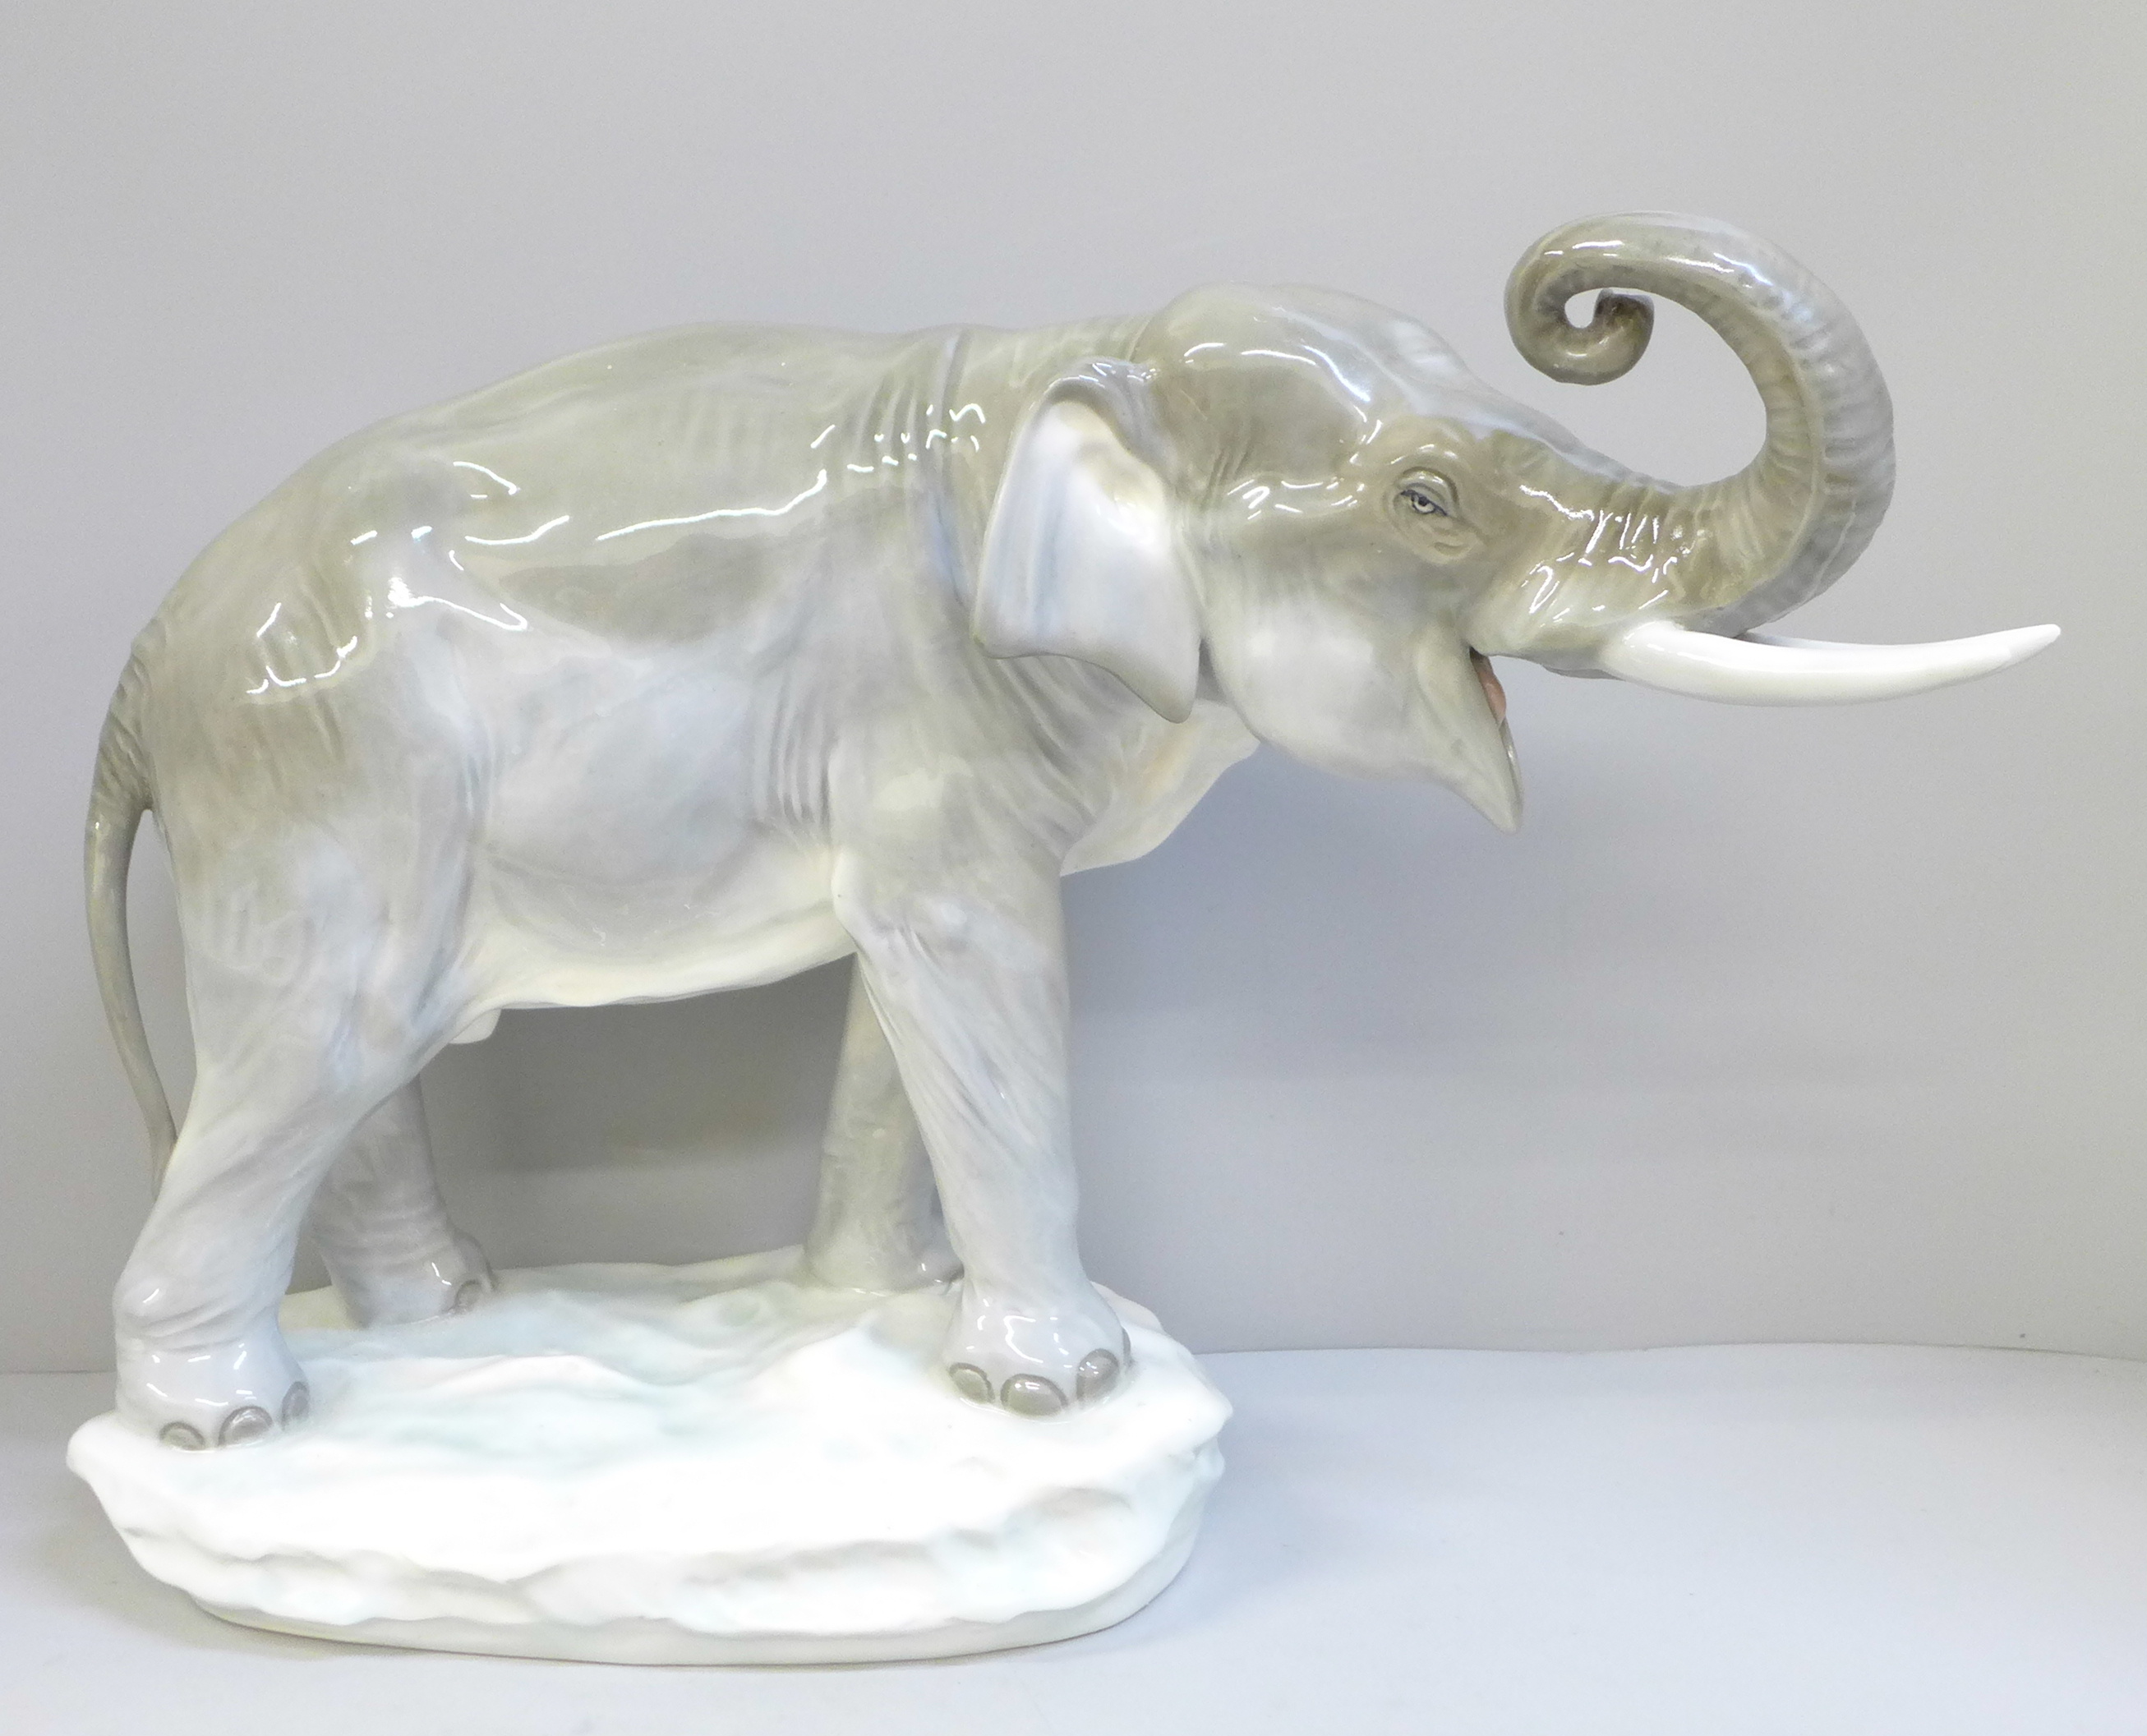 An Amphora model of an African elephant, 40cm